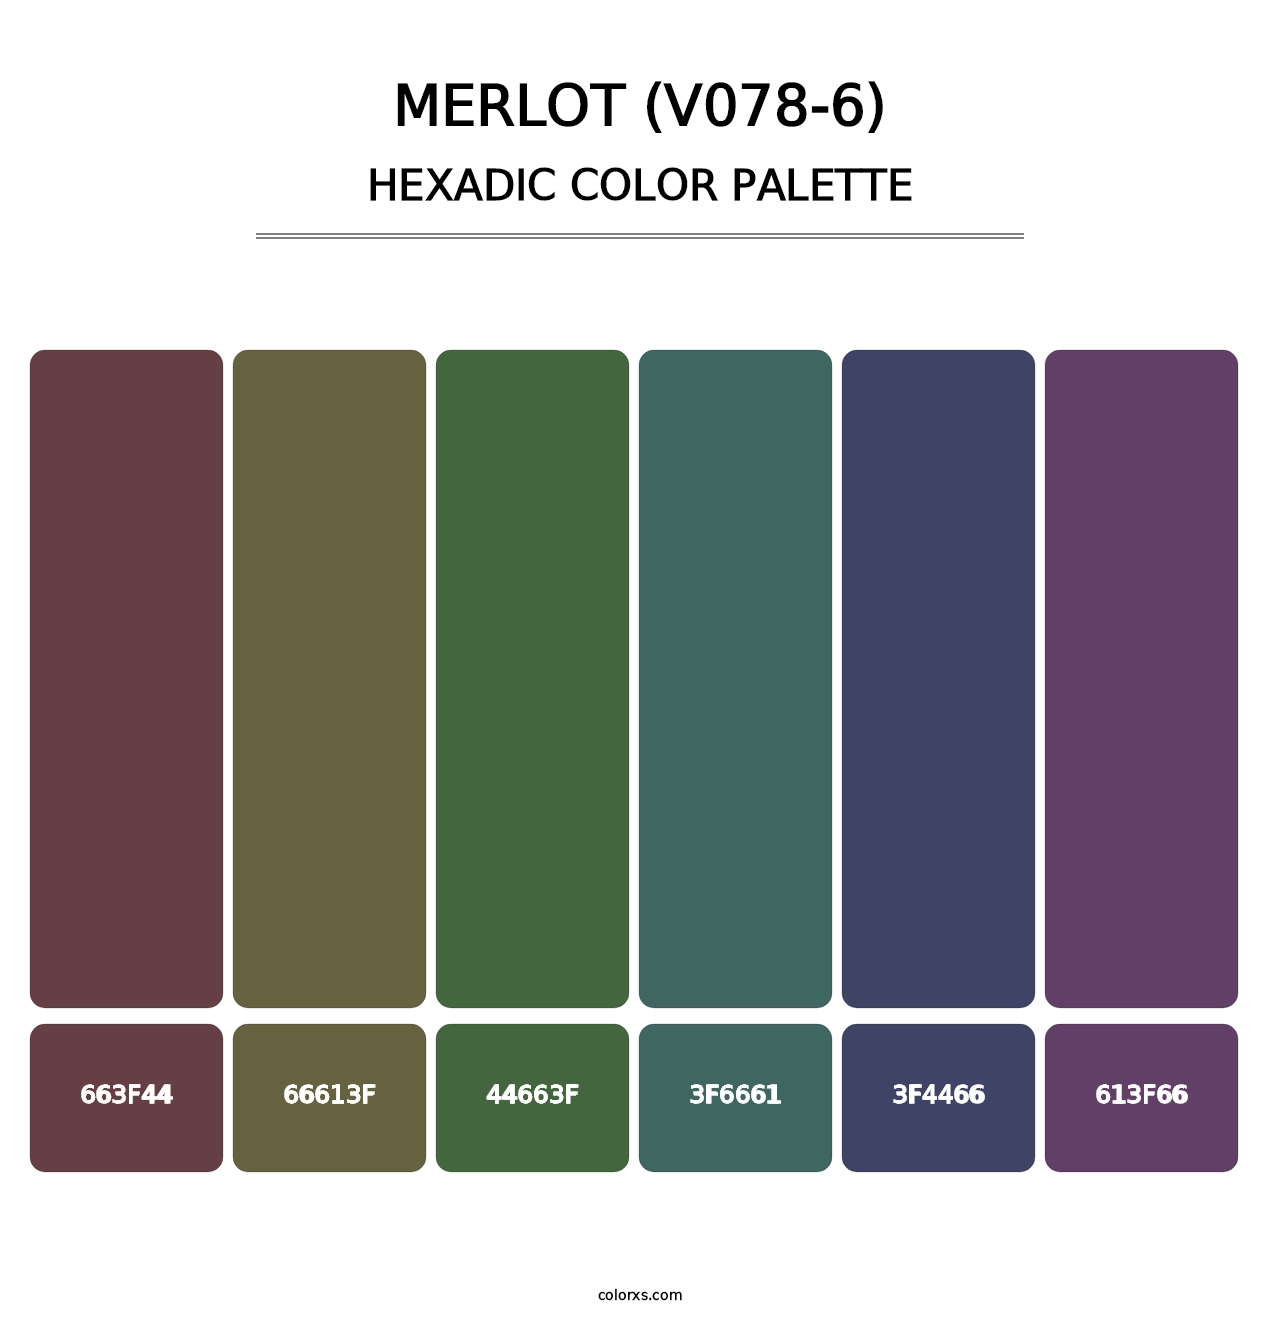 Merlot (V078-6) - Hexadic Color Palette